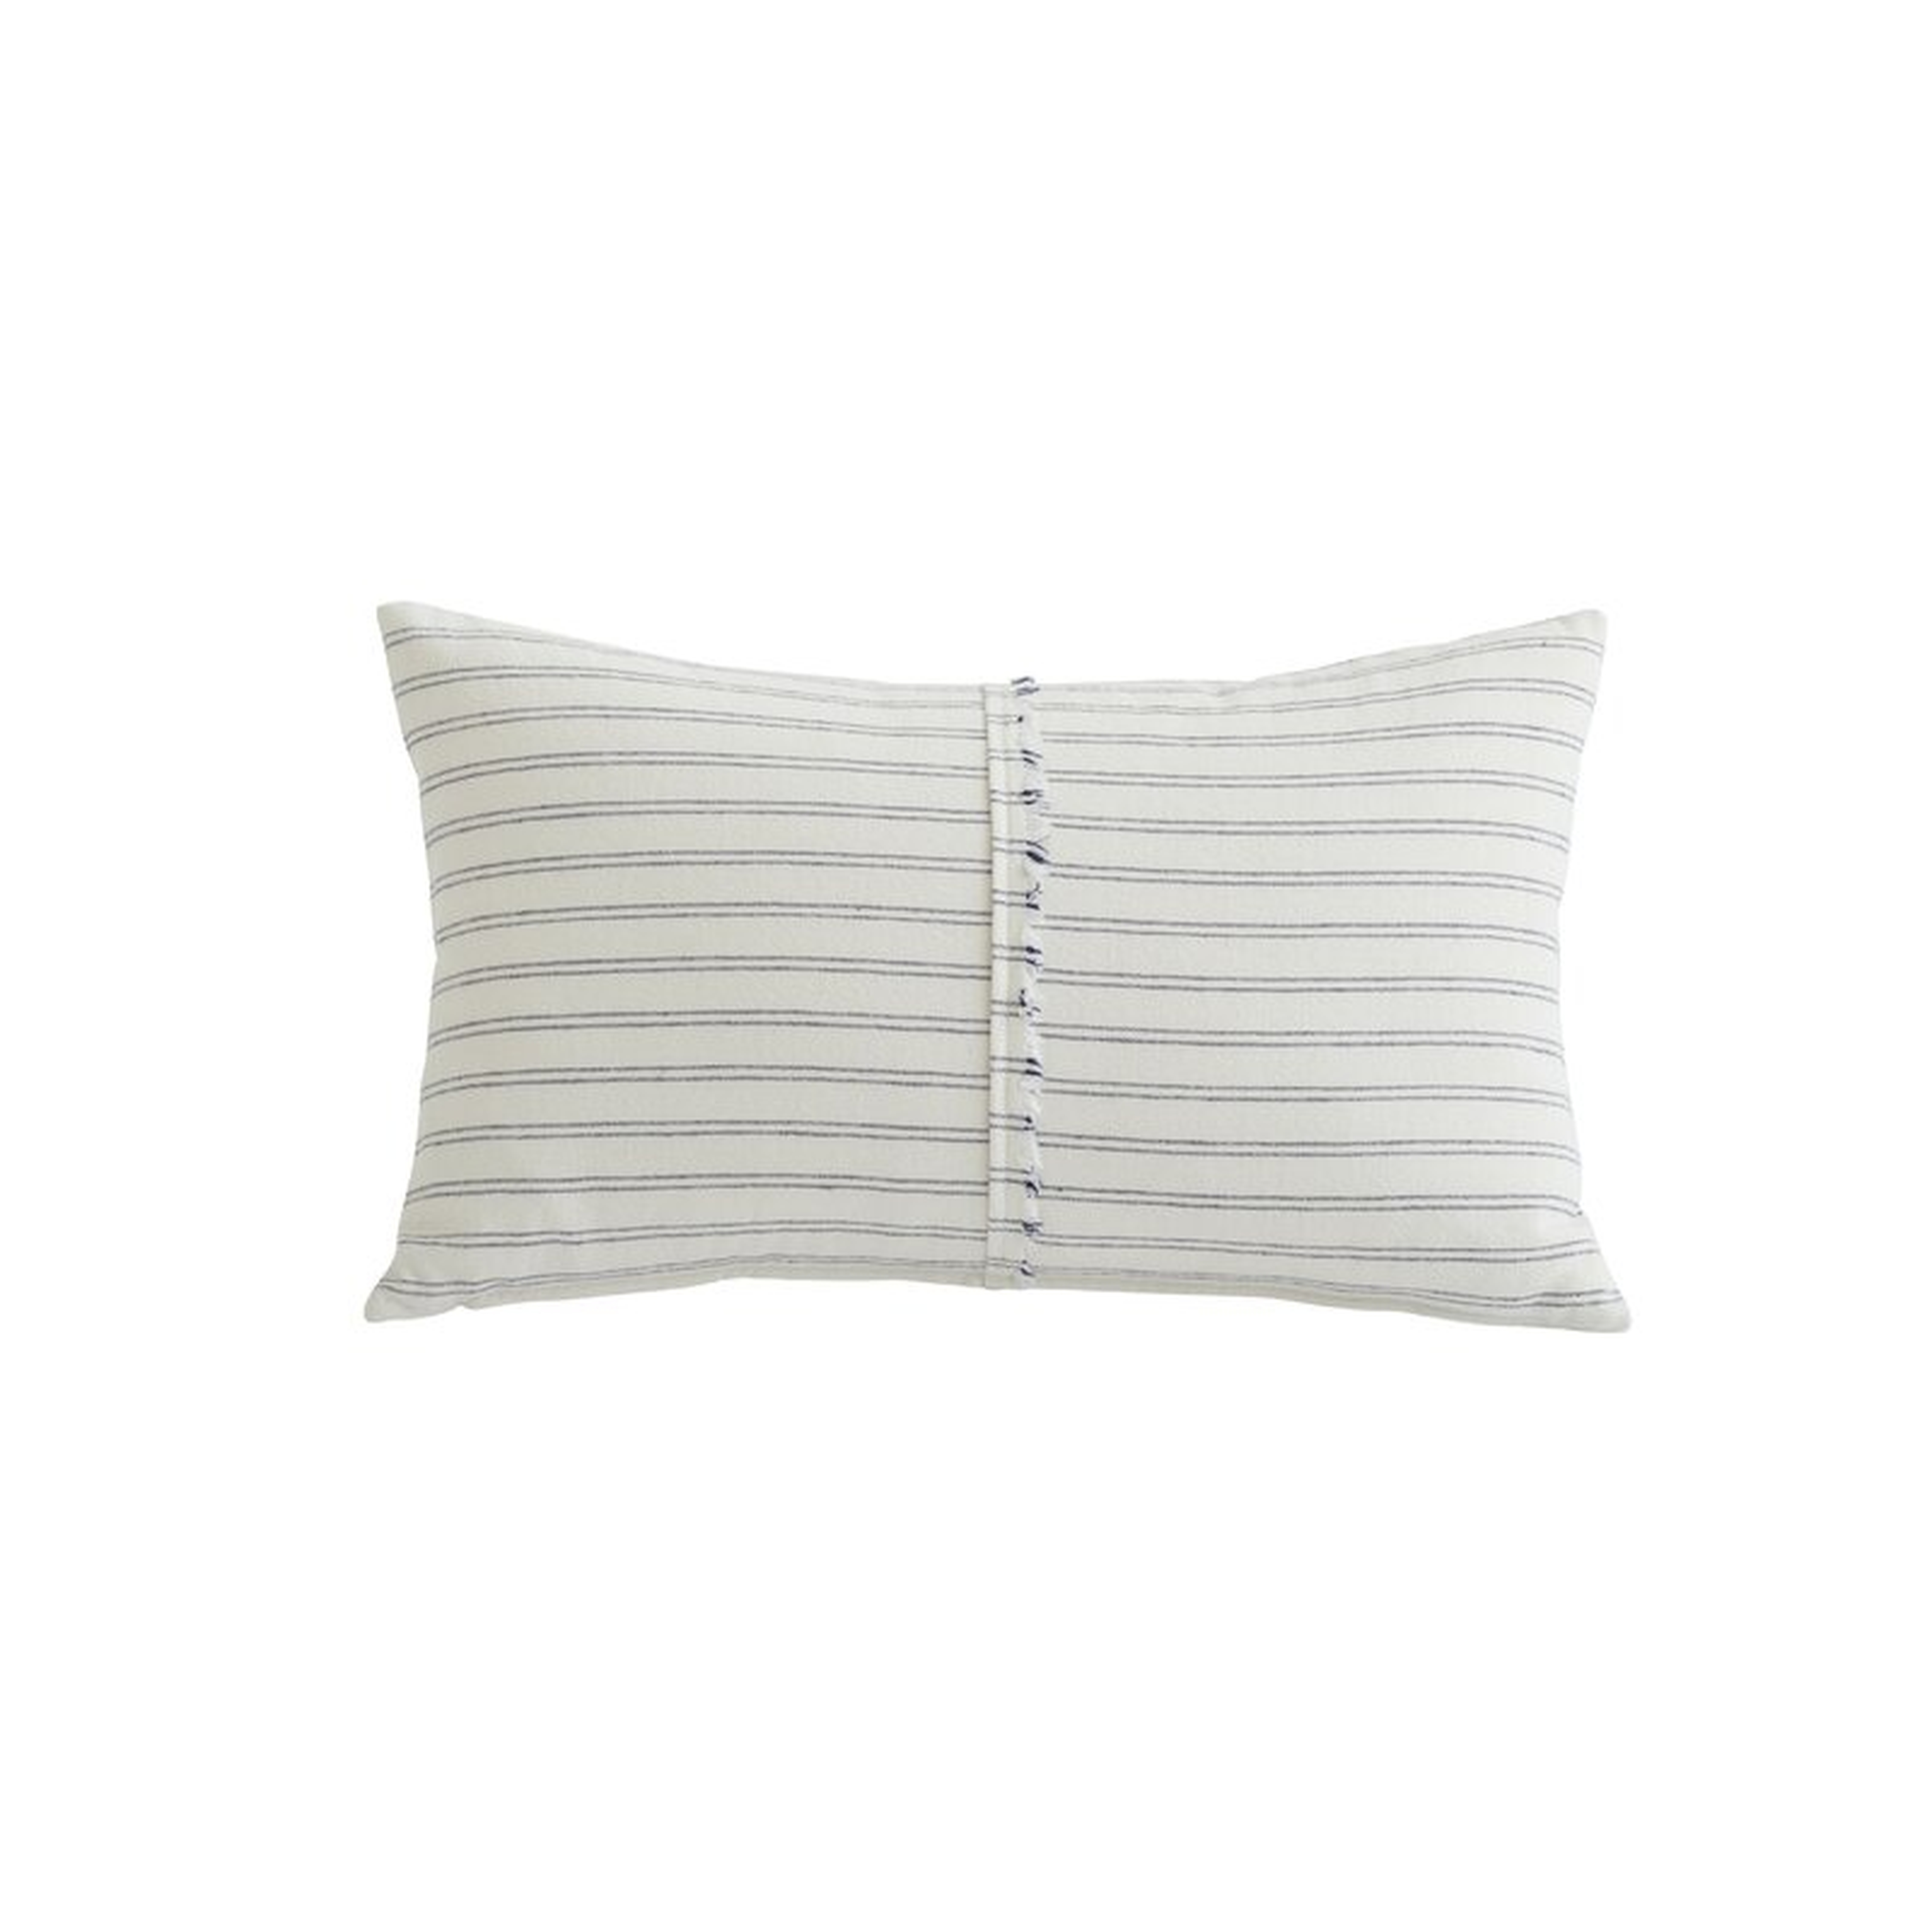 Joe Ruggiero Collection Amalfi Lumbar Pillow - Perigold